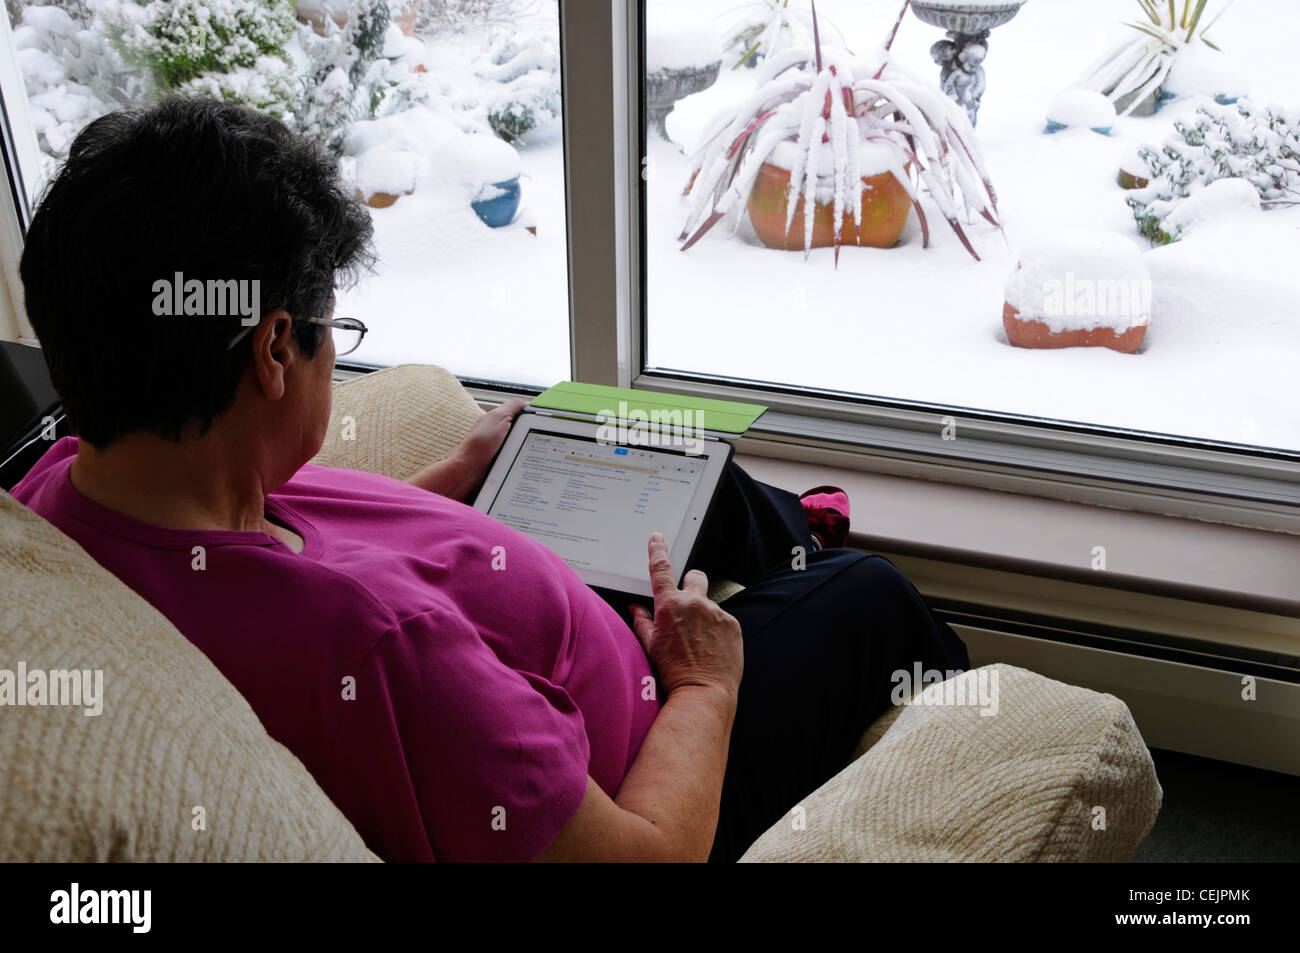 Femme sénior mature titulaire d'un Apple iPad tablette numérique sélection d'applications par fenêtre assis dans un fauteuil hiver neige dehors Angleterre Royaume-Uni Banque D'Images